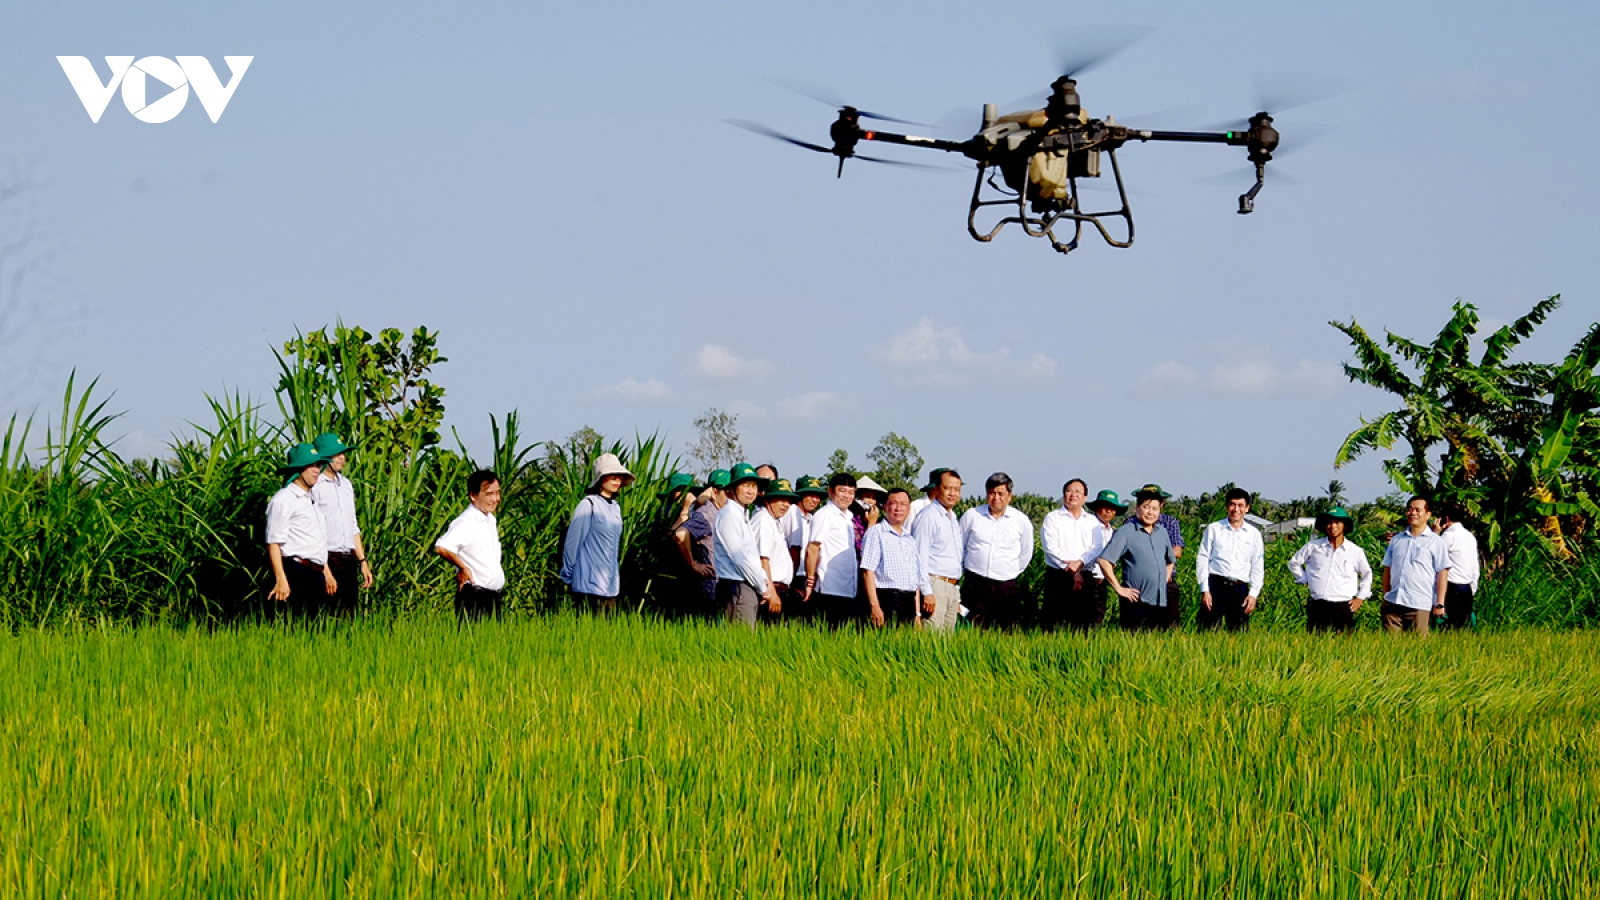 Khuyến nông cộng đồng - nòng cốt trong Đề án 1 triệu ha lúa giảm phát thải